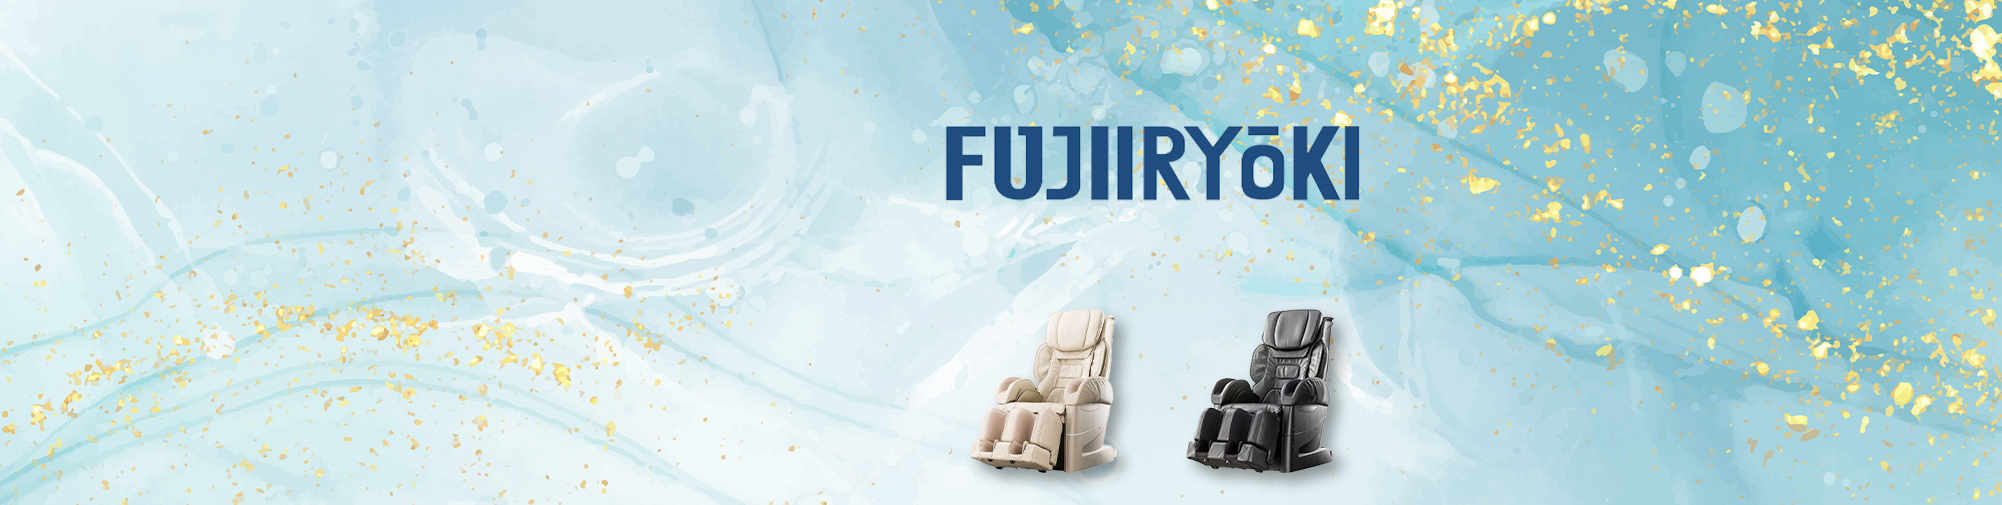 Fujiiryoki - Историята на масажните столове | Massage Chair World